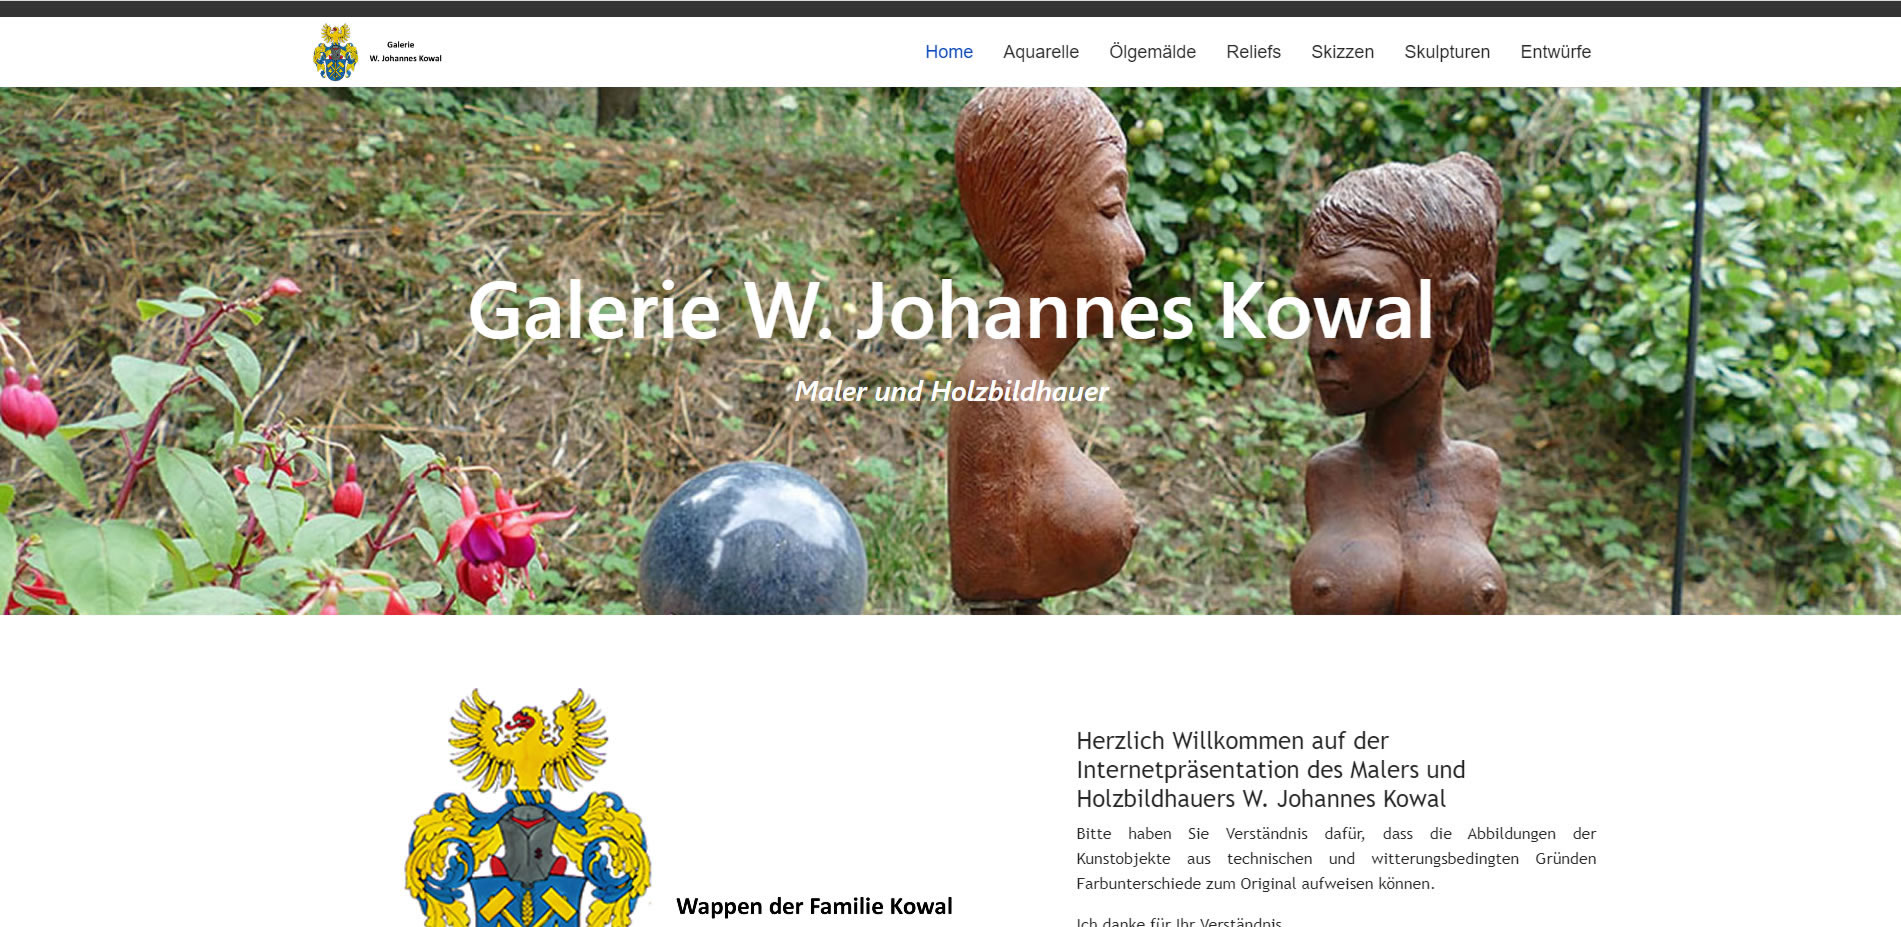 Galerie W. Johannes Kowal